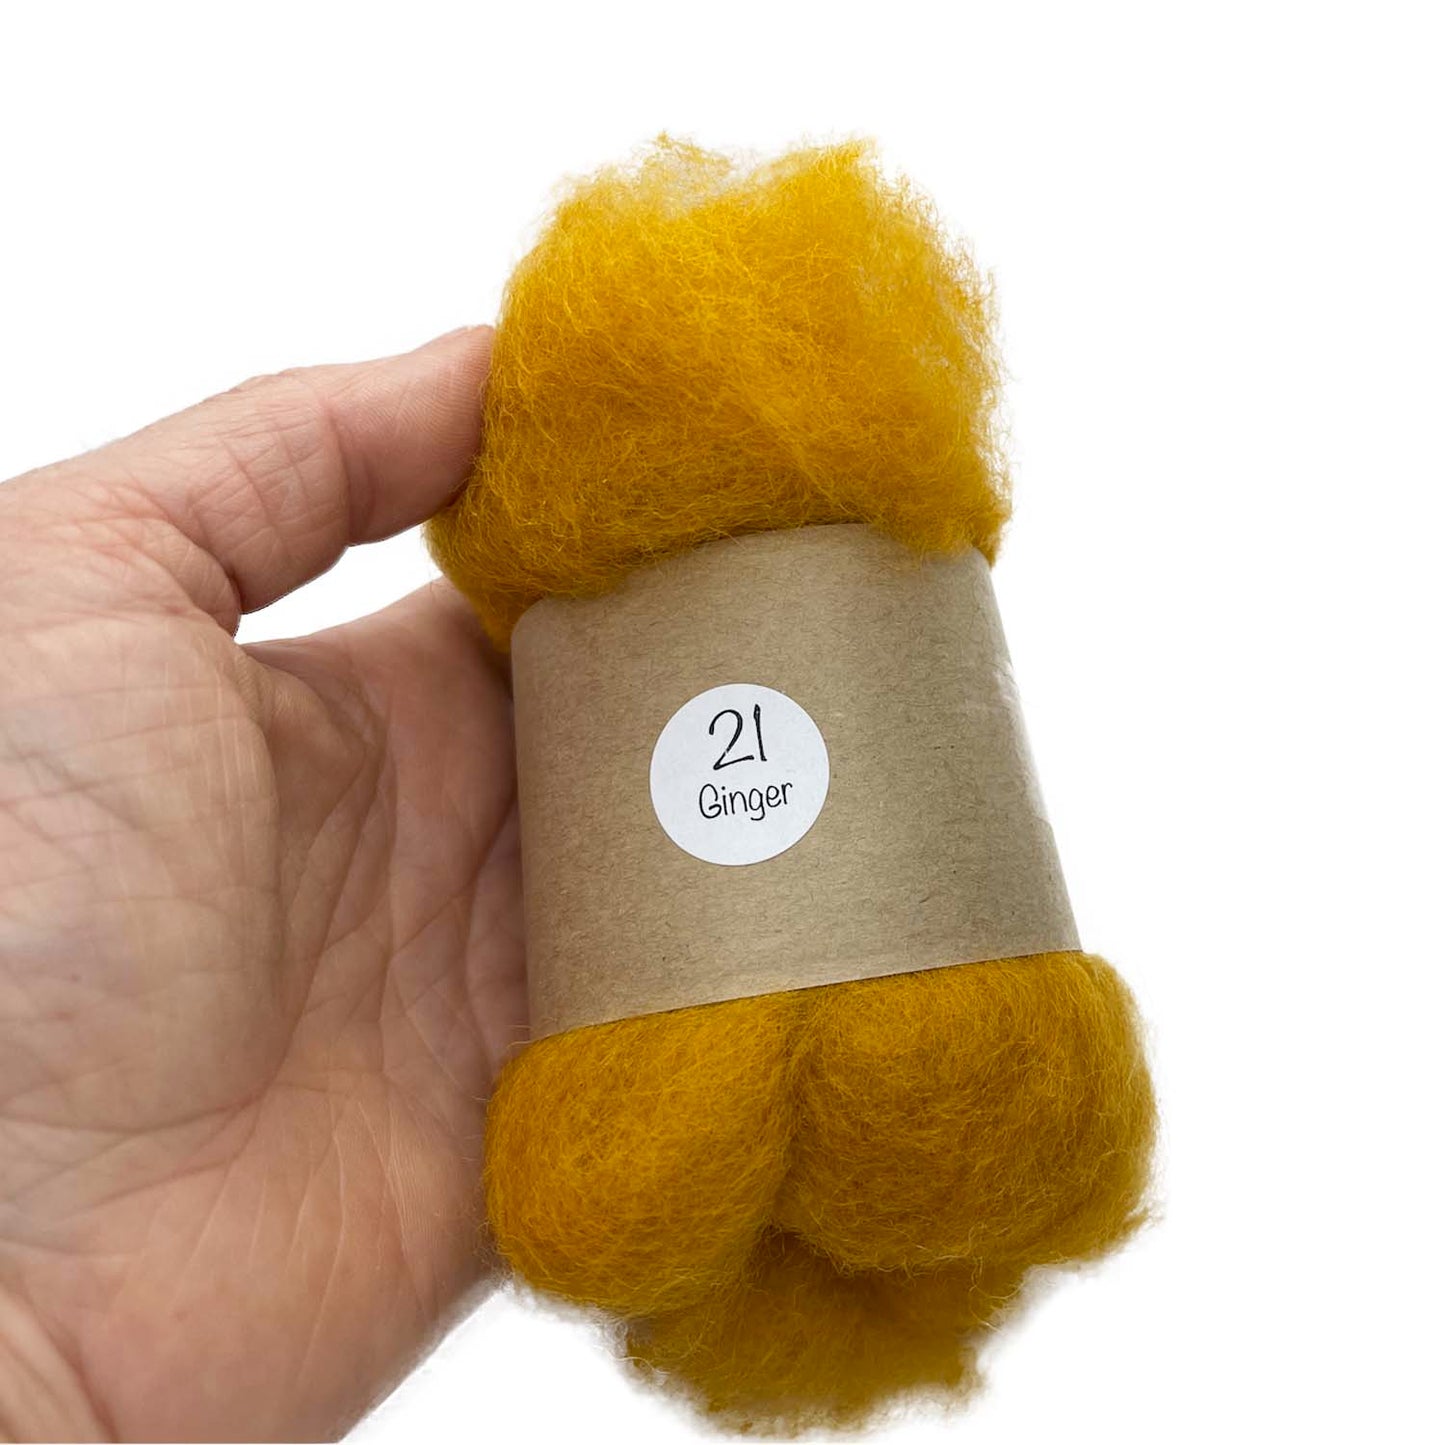 Needle Felting Wool Batting Carded NZ Ginger ( 21 )